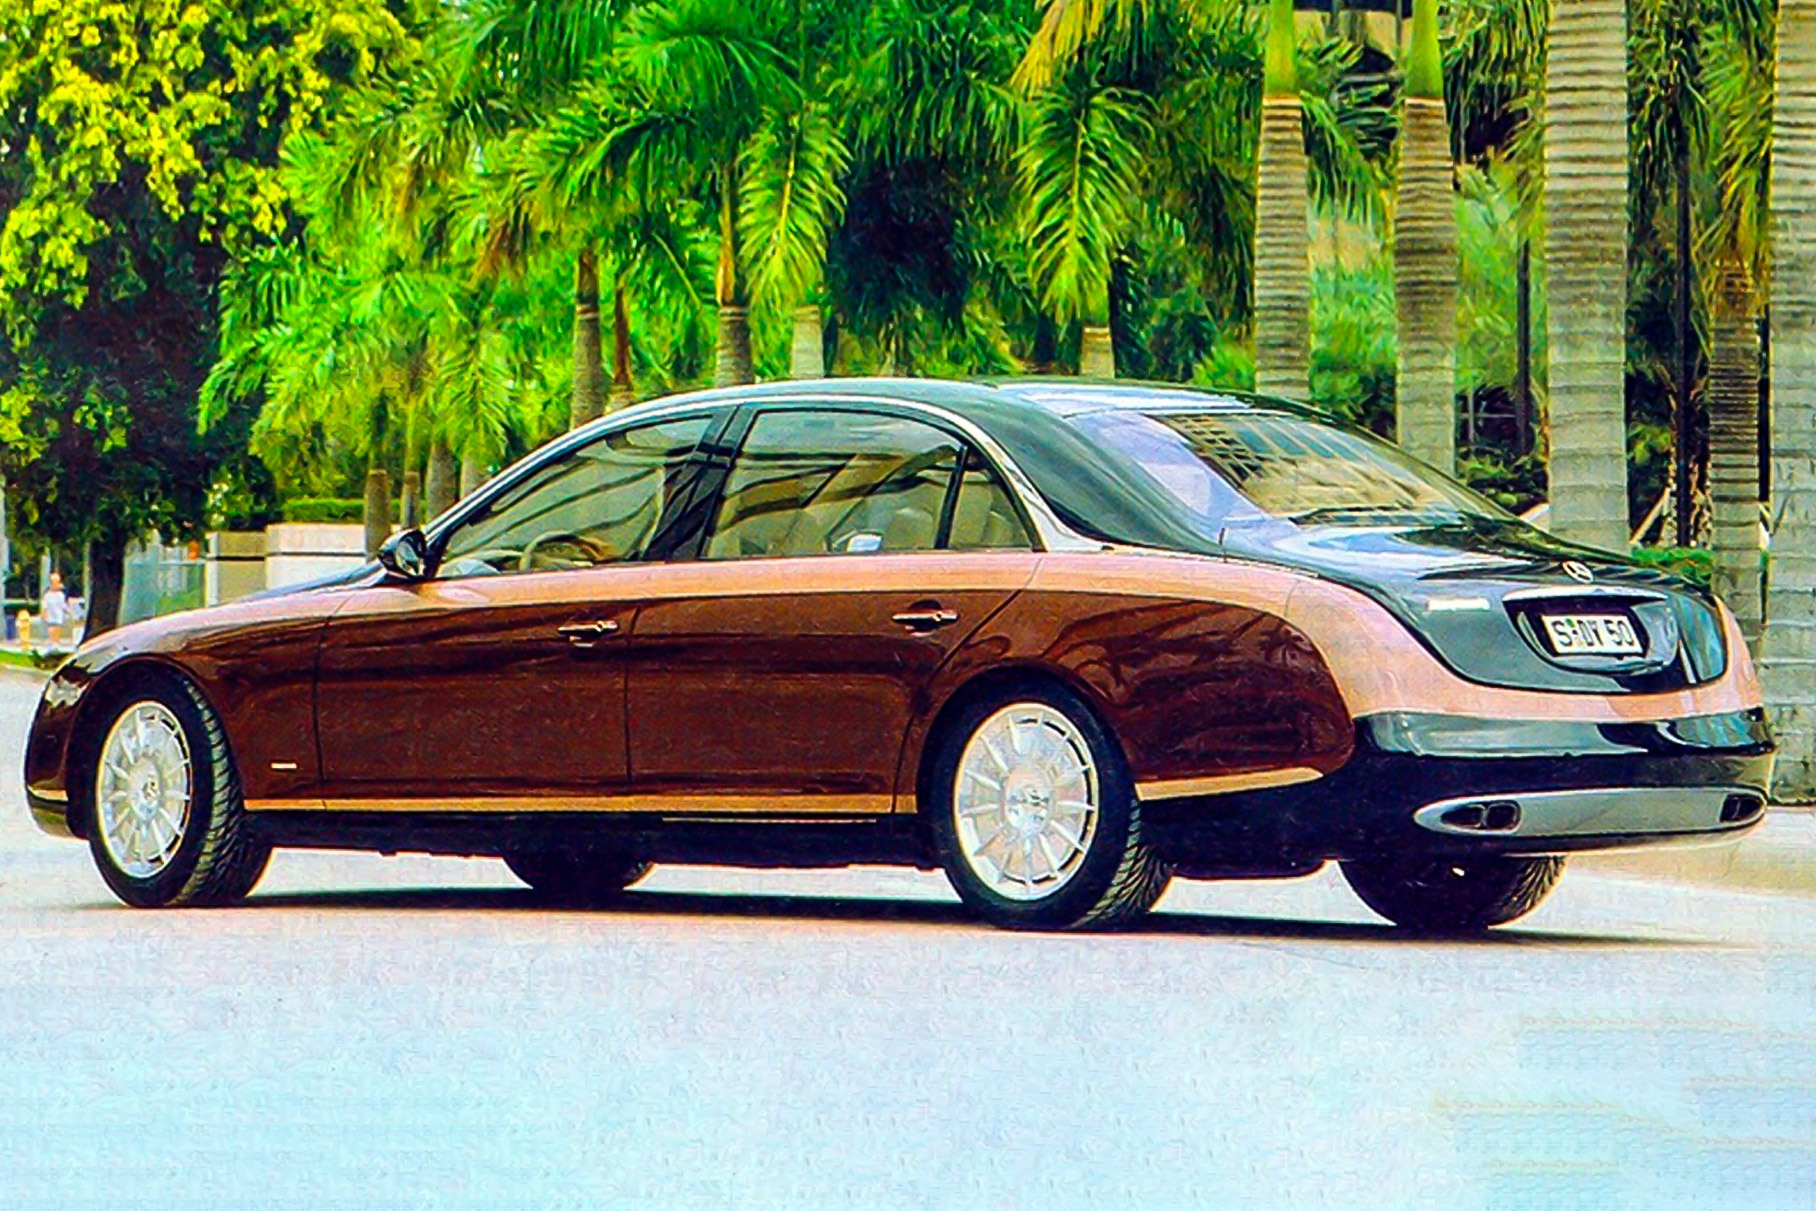 Ала автомобиля. Mercedes Benz Maybach 1997. Мерседес Майбах 1997. Maybach Concept 1997. Mercedes-Maybach Concept 1997.